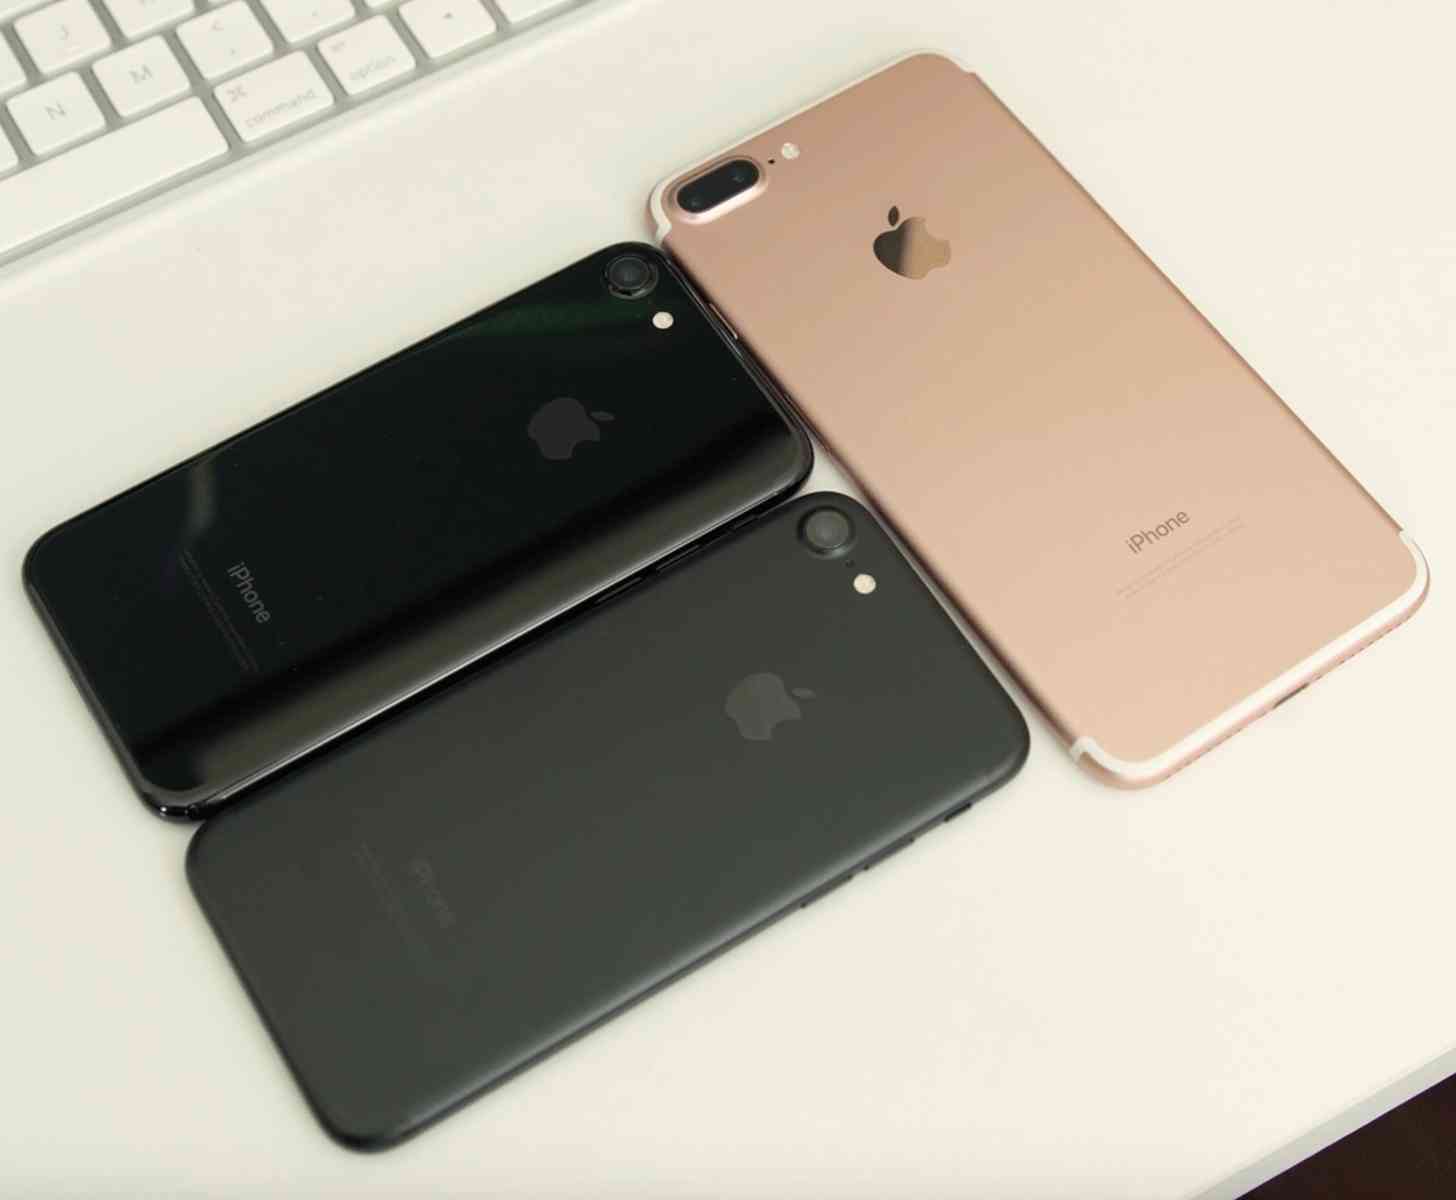 iPhone 7, iPhone 7 Plus comparison